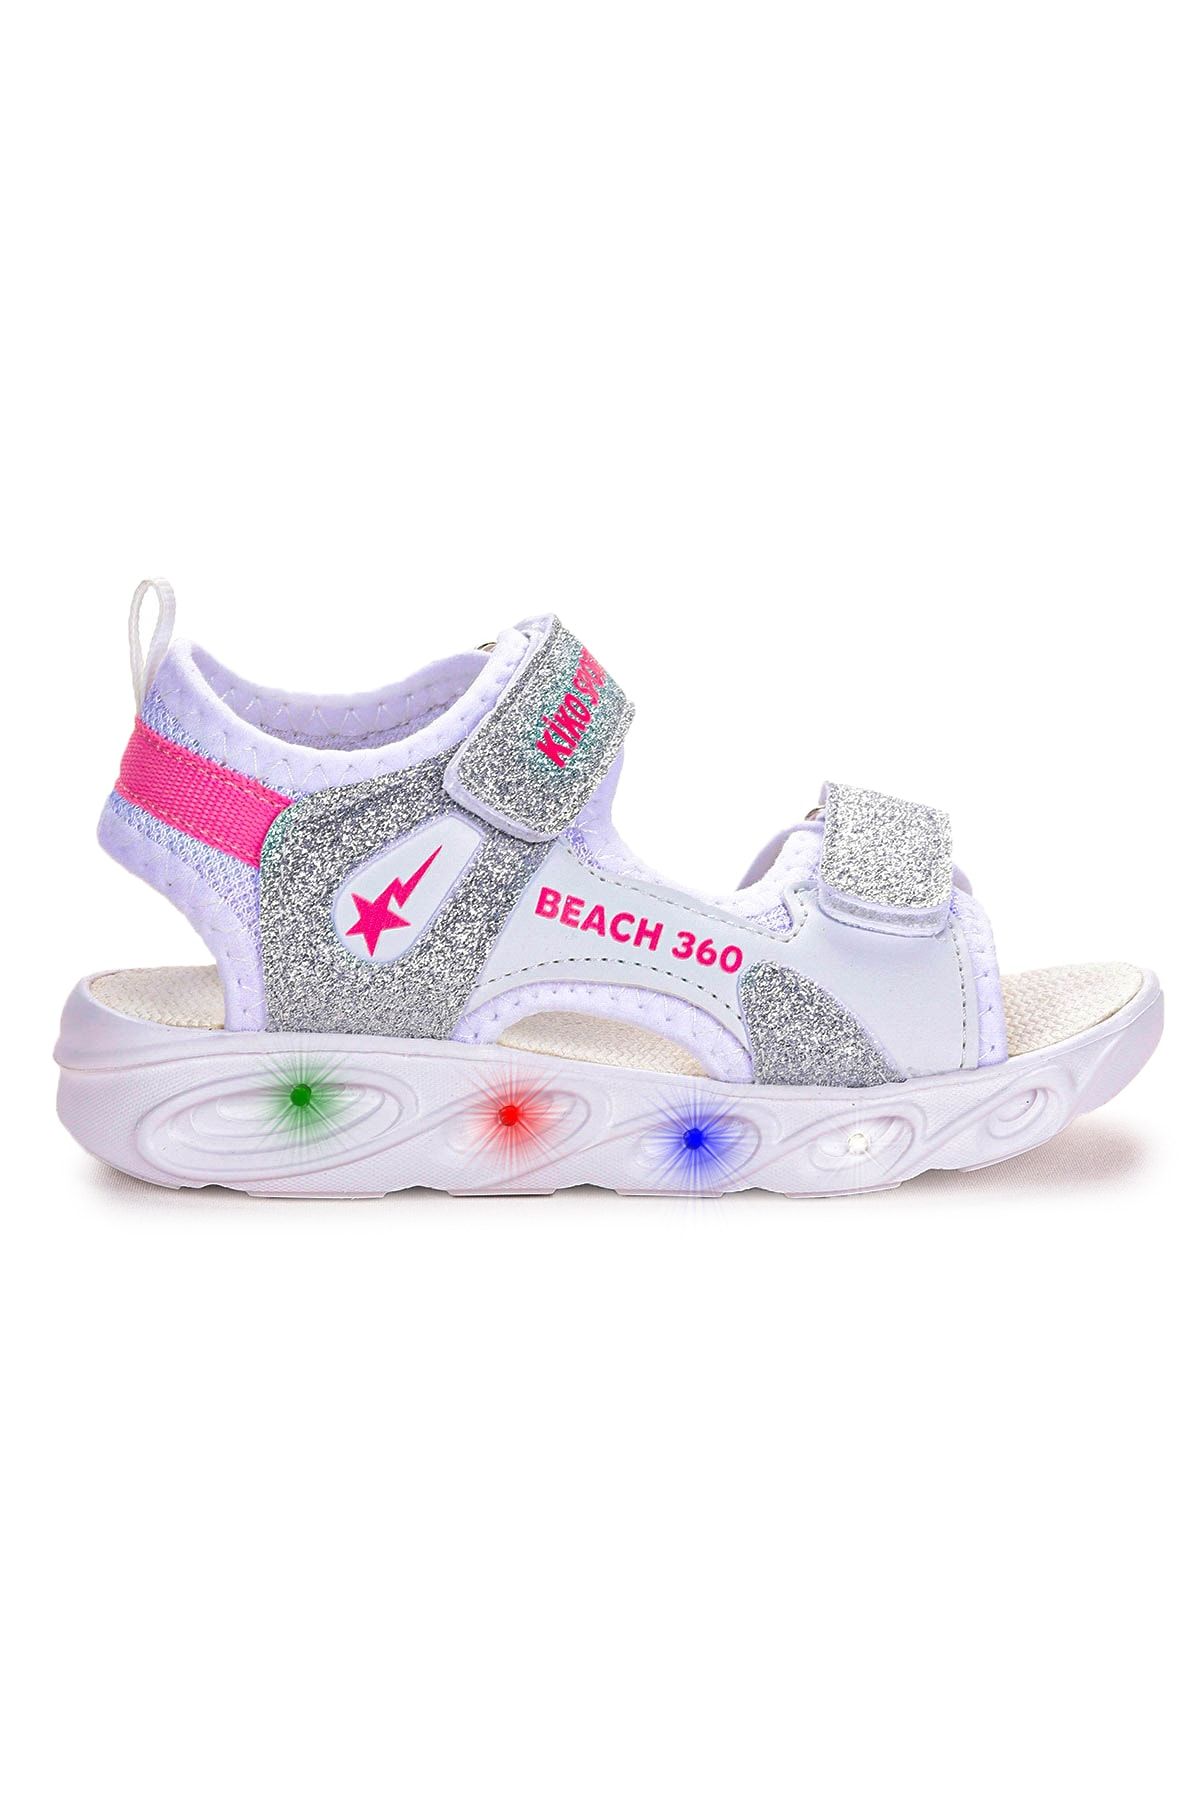 Kiko Kids 102 Simli Işıklı Günlük Kız Çocuk Cırtlı Sandalet Ayakkabı